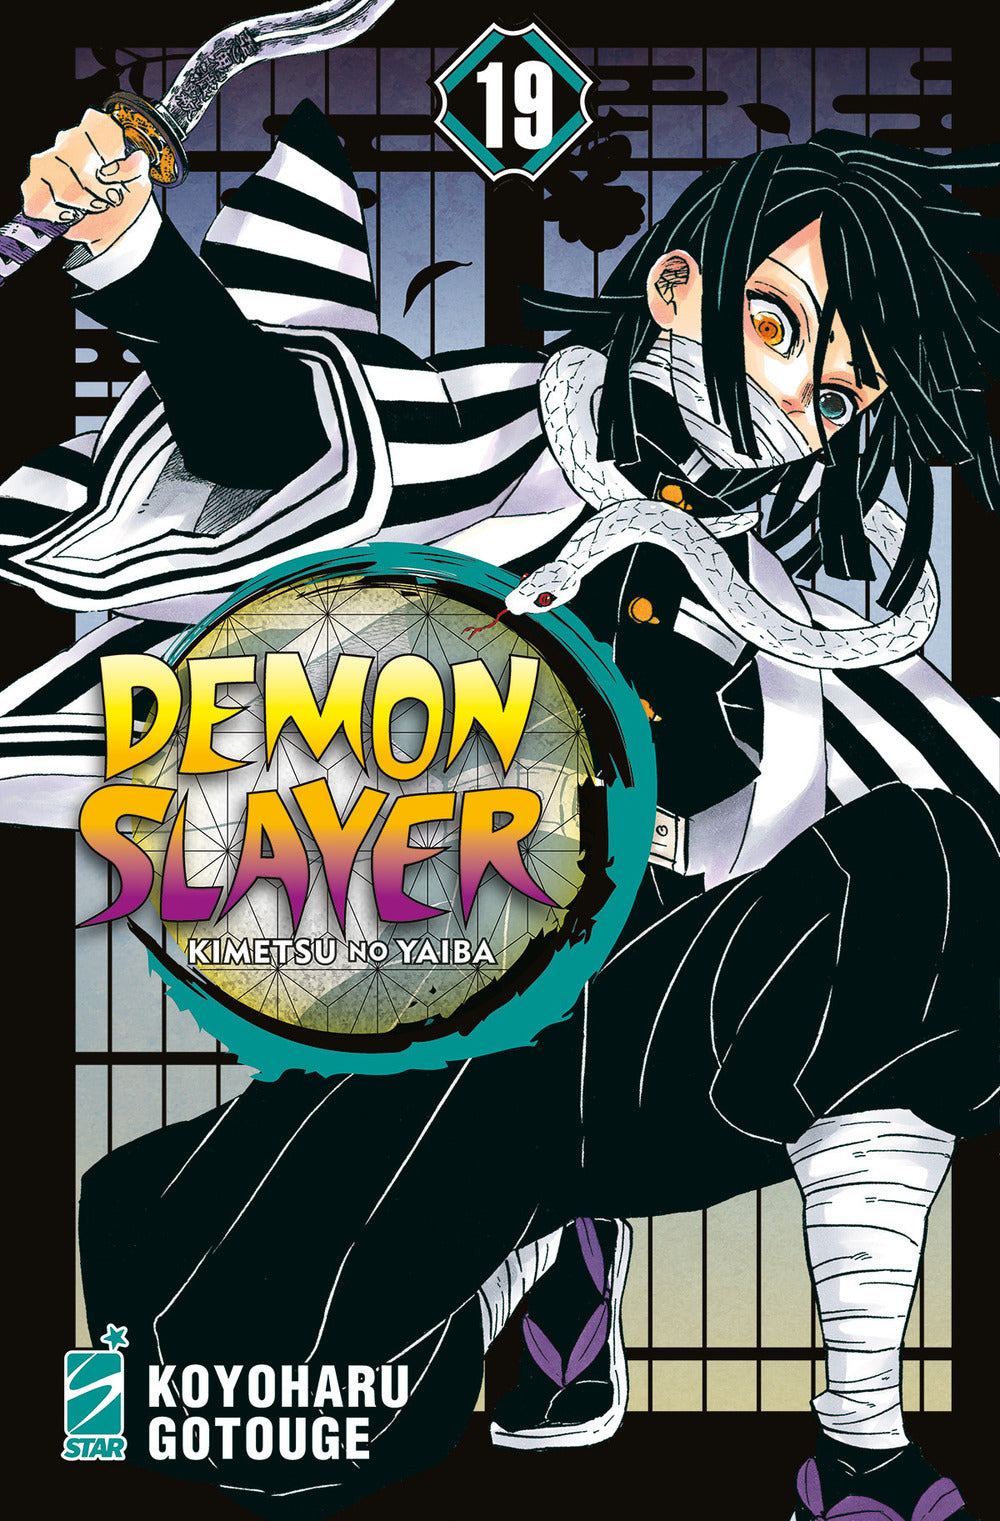 Demon slayer. Kimetsu no yaiba. Vol. 19.